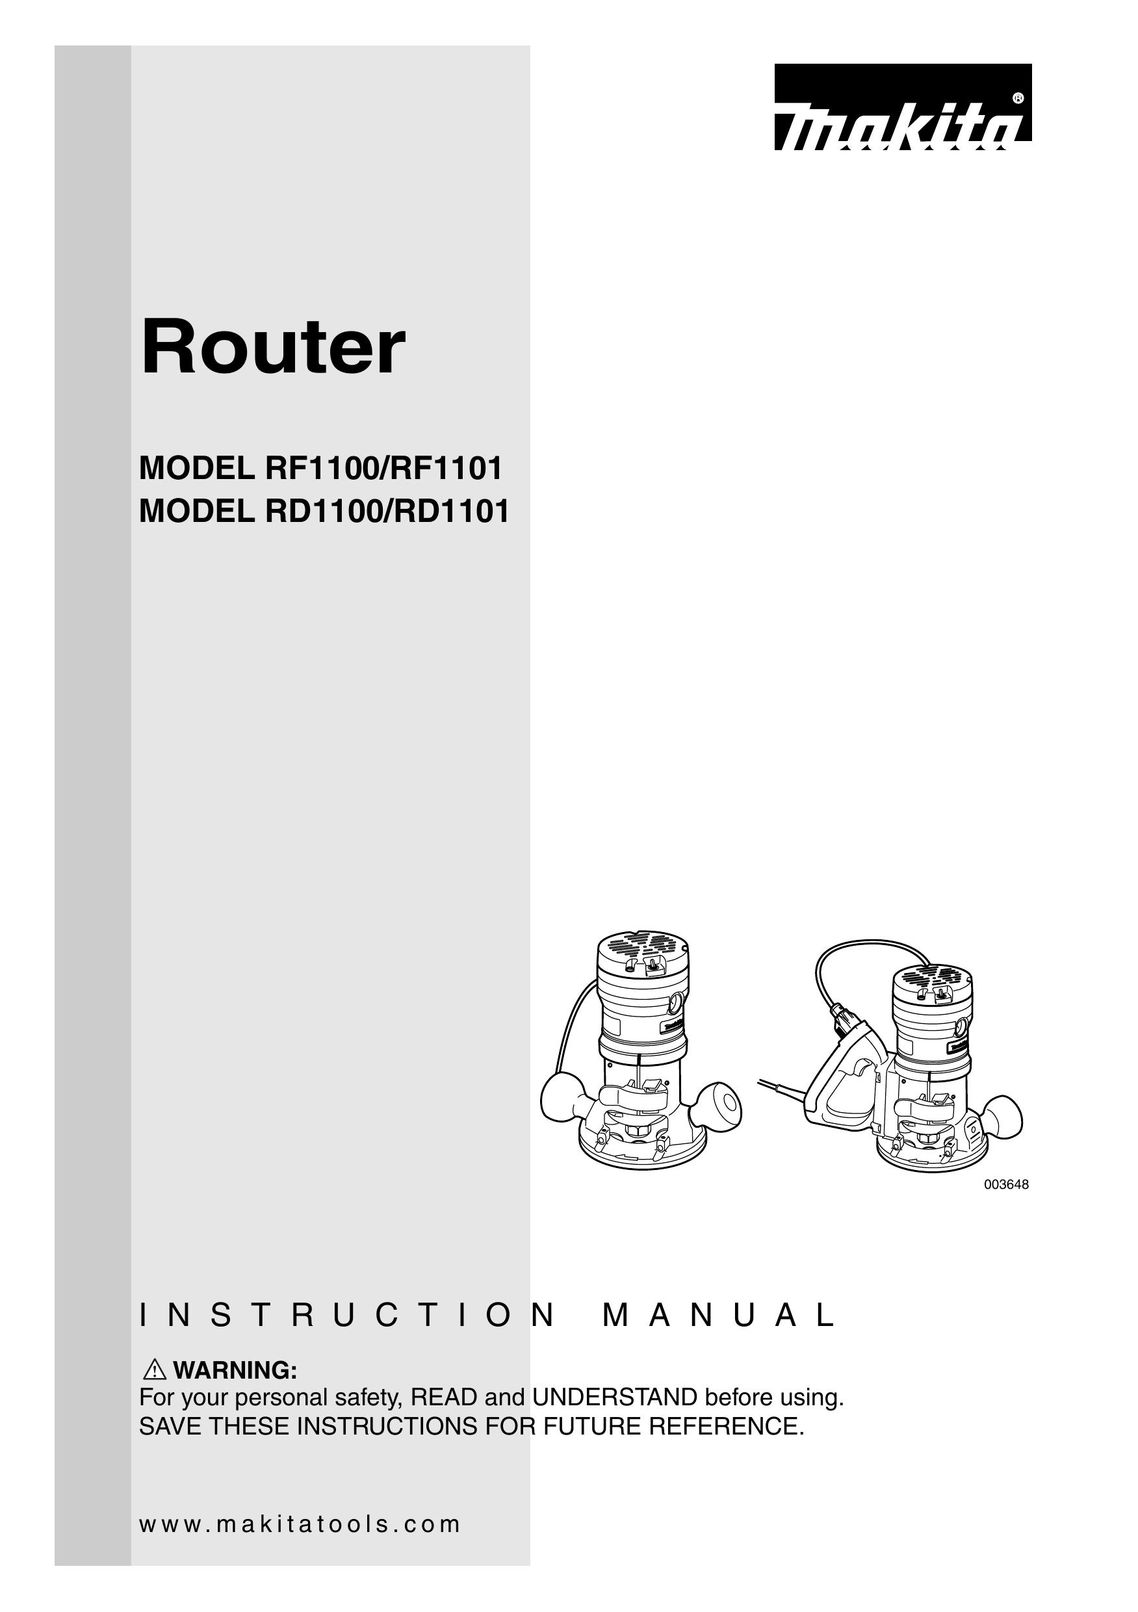 Makita RF1100 Router User Manual